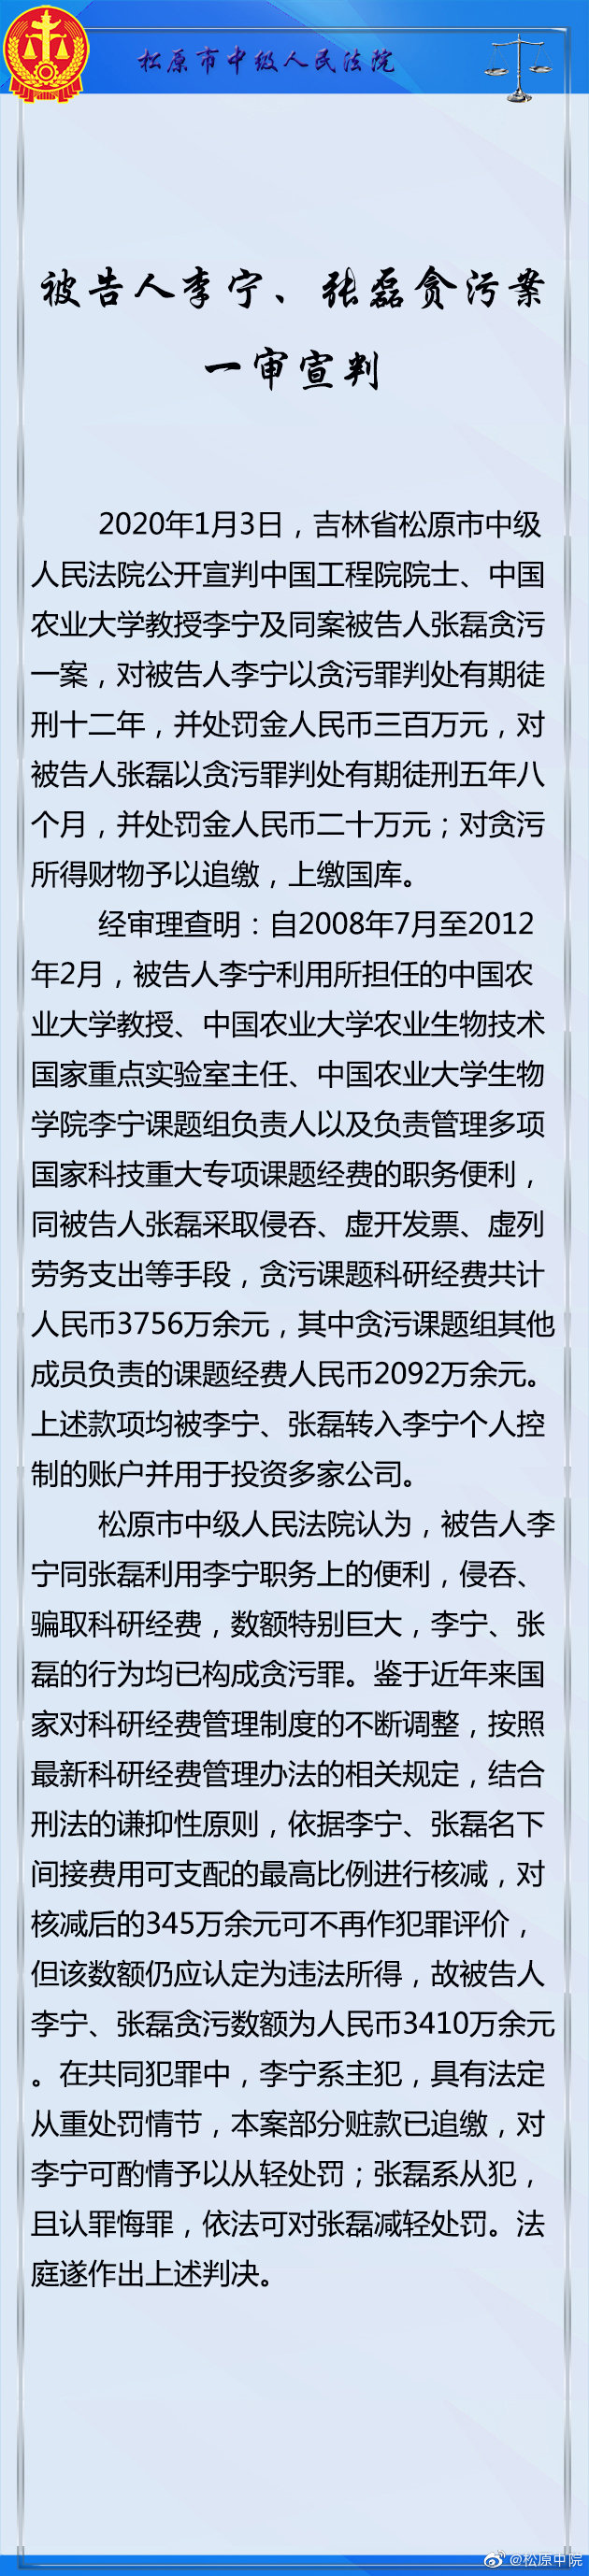 吉林省松原市中級人民法院官方微博圖